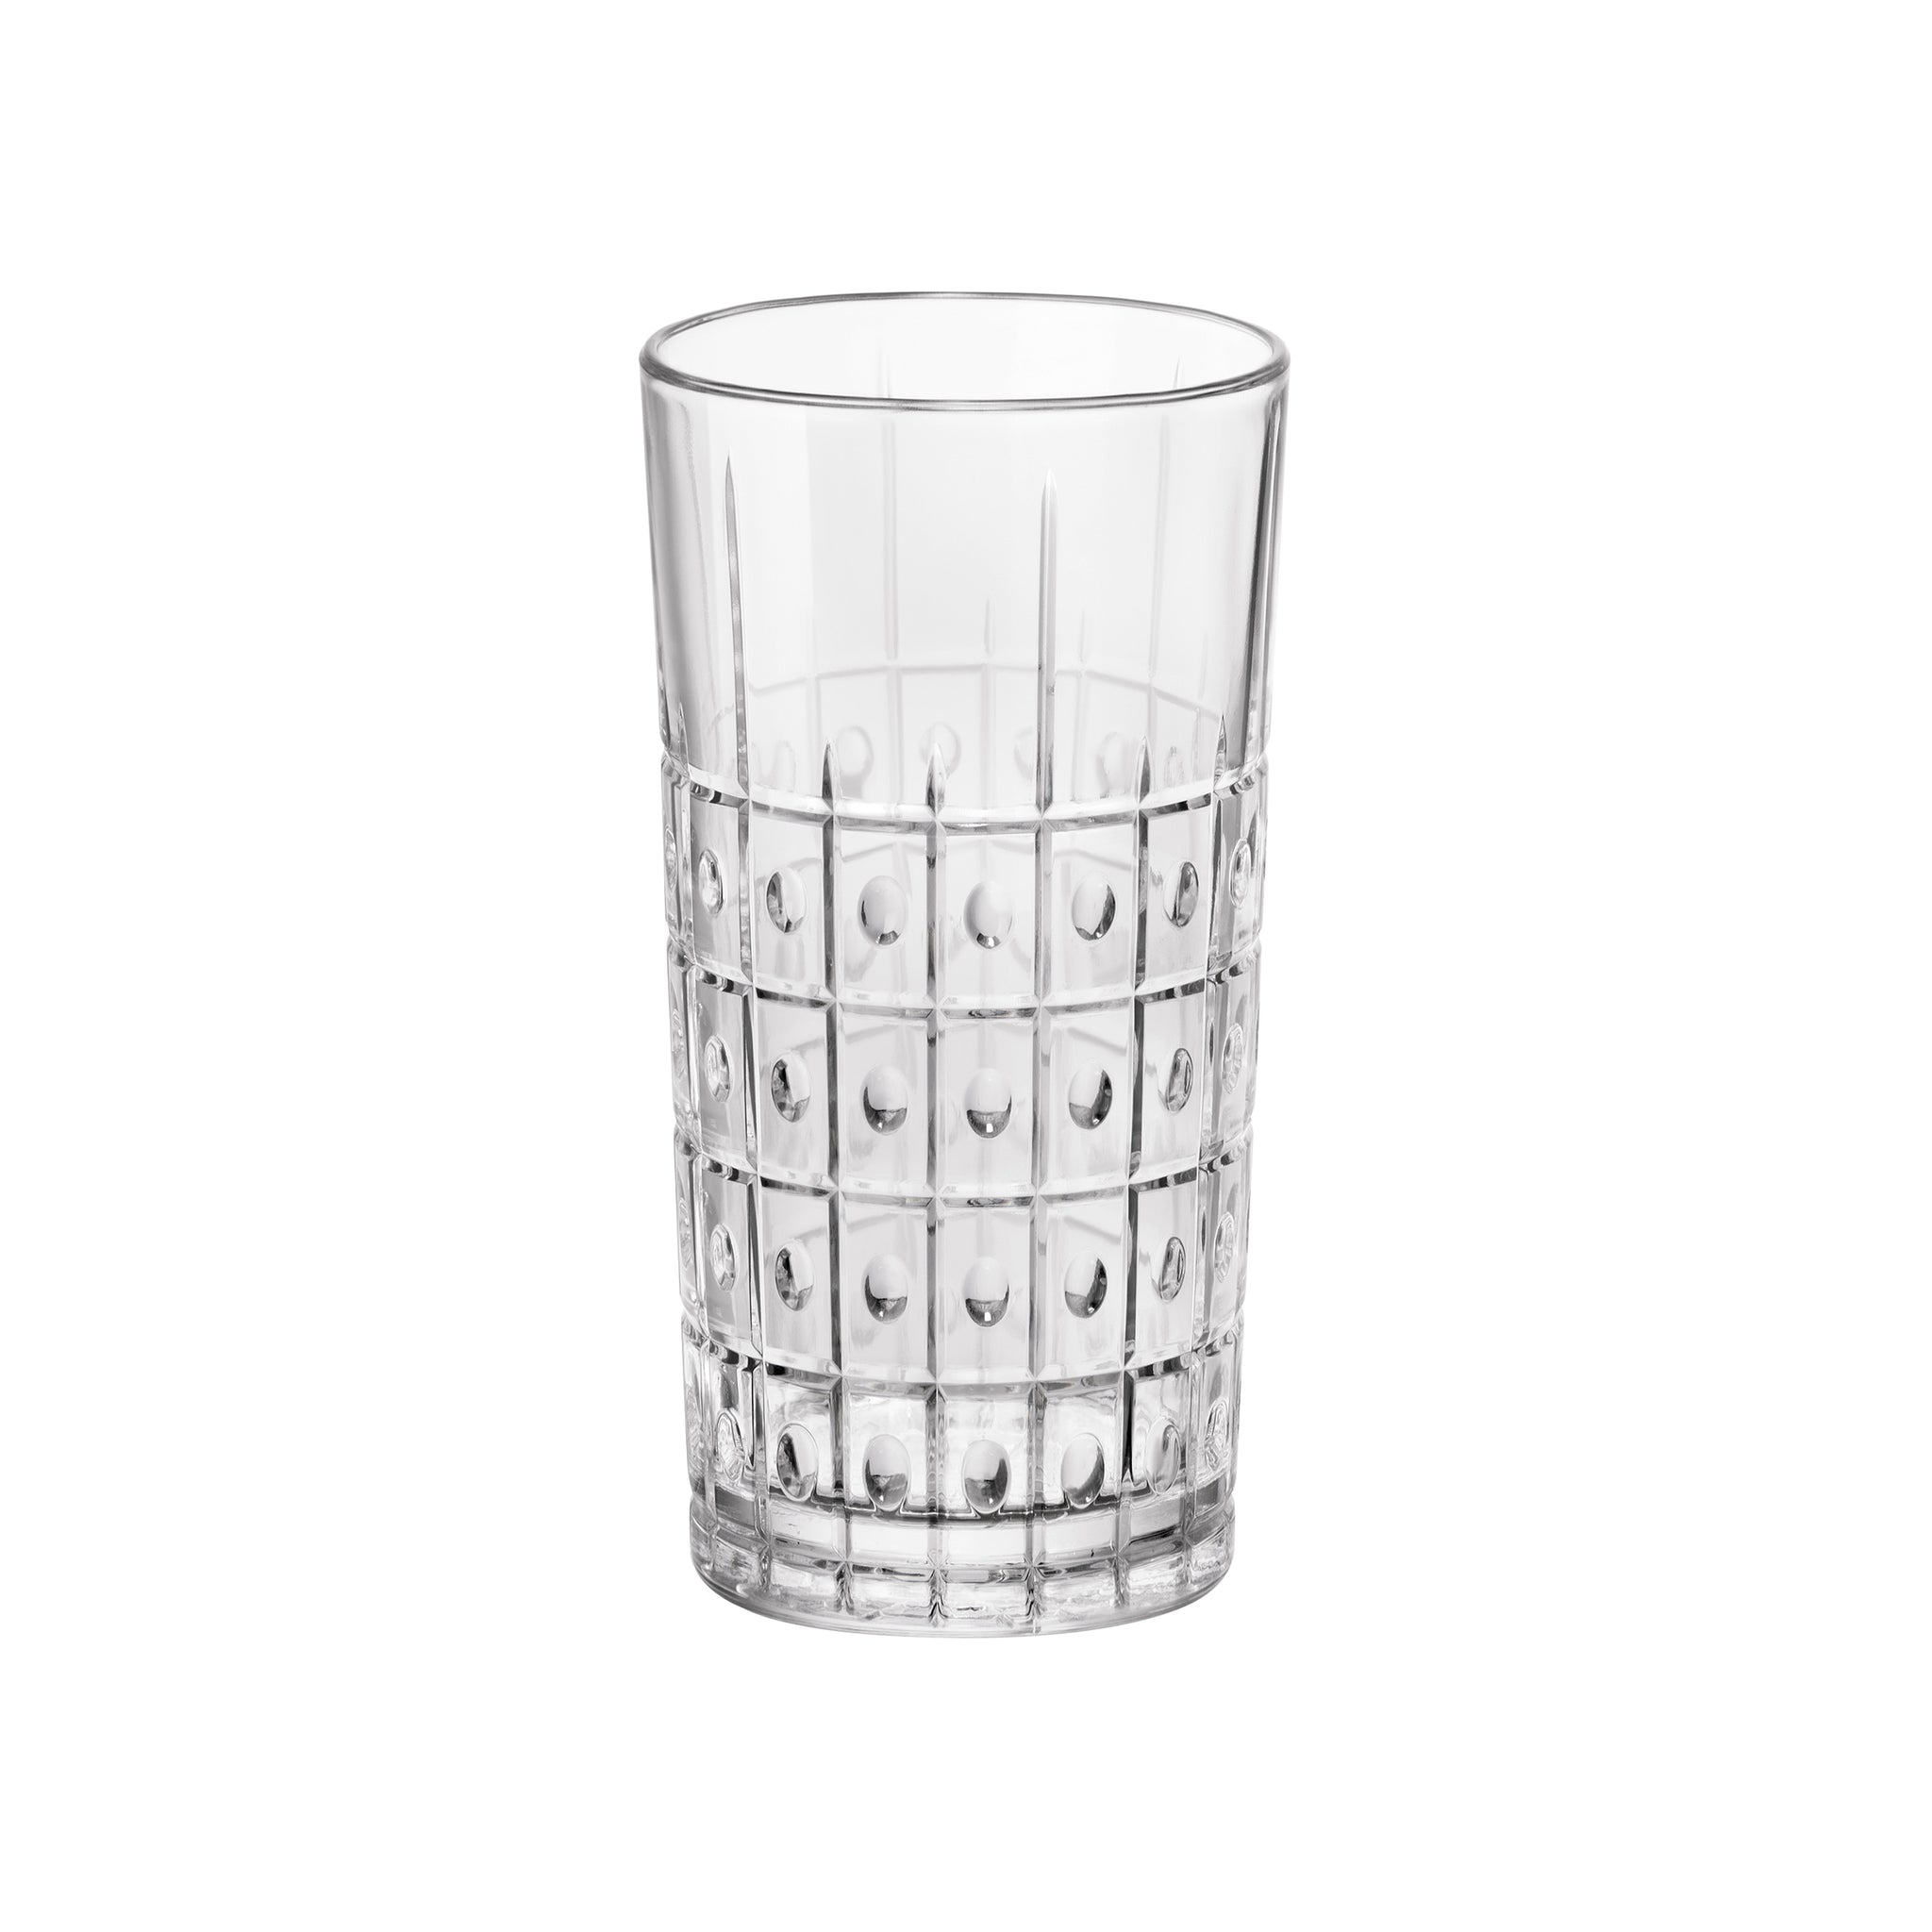 Bartender 10 oz. Este Long Drink Drinking Glasses (Set of 4)